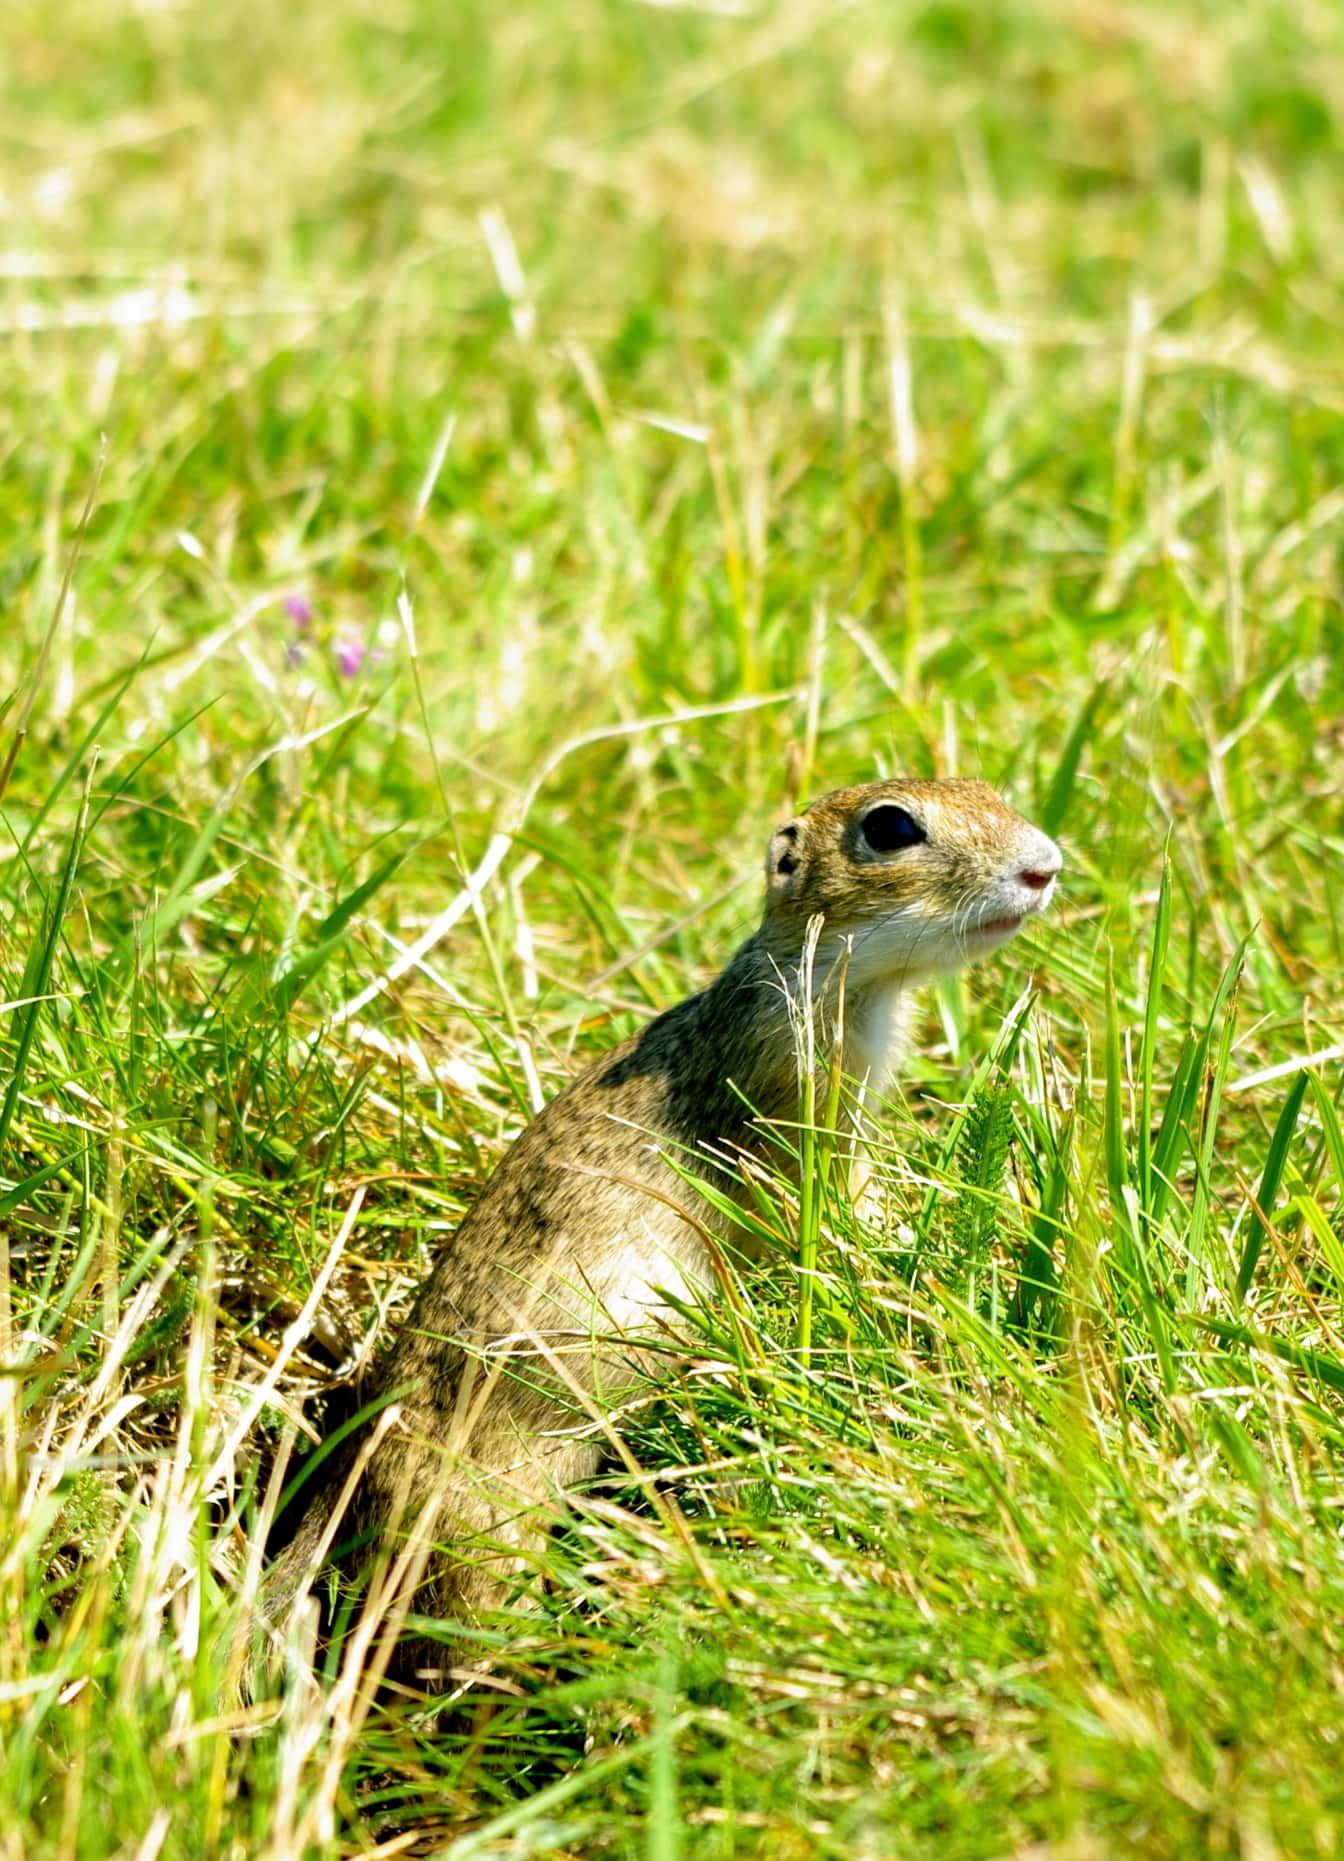 Petit écureuil terrestre ou petit souslik (Spermophilus pygmaeus) dans les graminées vertes